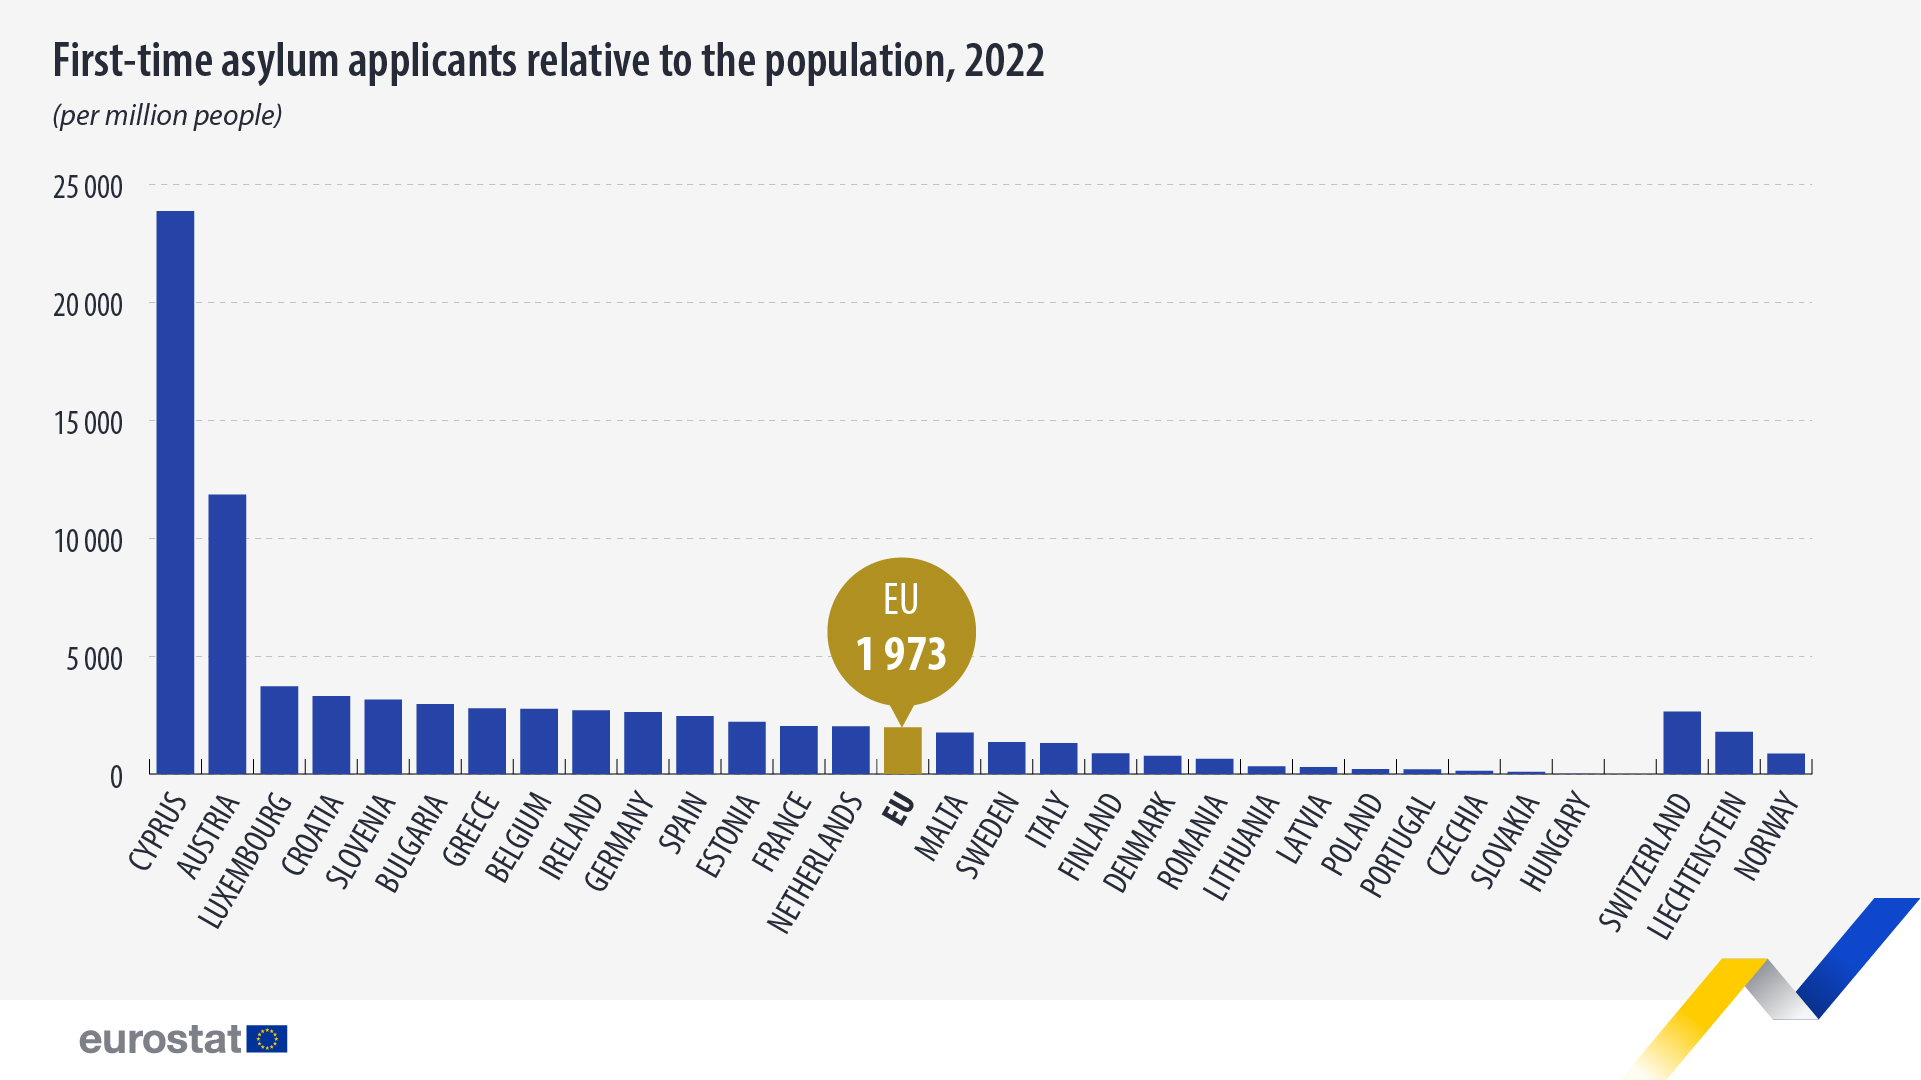 ραβδόγραμμα: αιτούντες άσυλο για πρώτη φορά σε σχέση με τον πληθυσμό, 2022 (ανά εκατομμύριο άτομα)